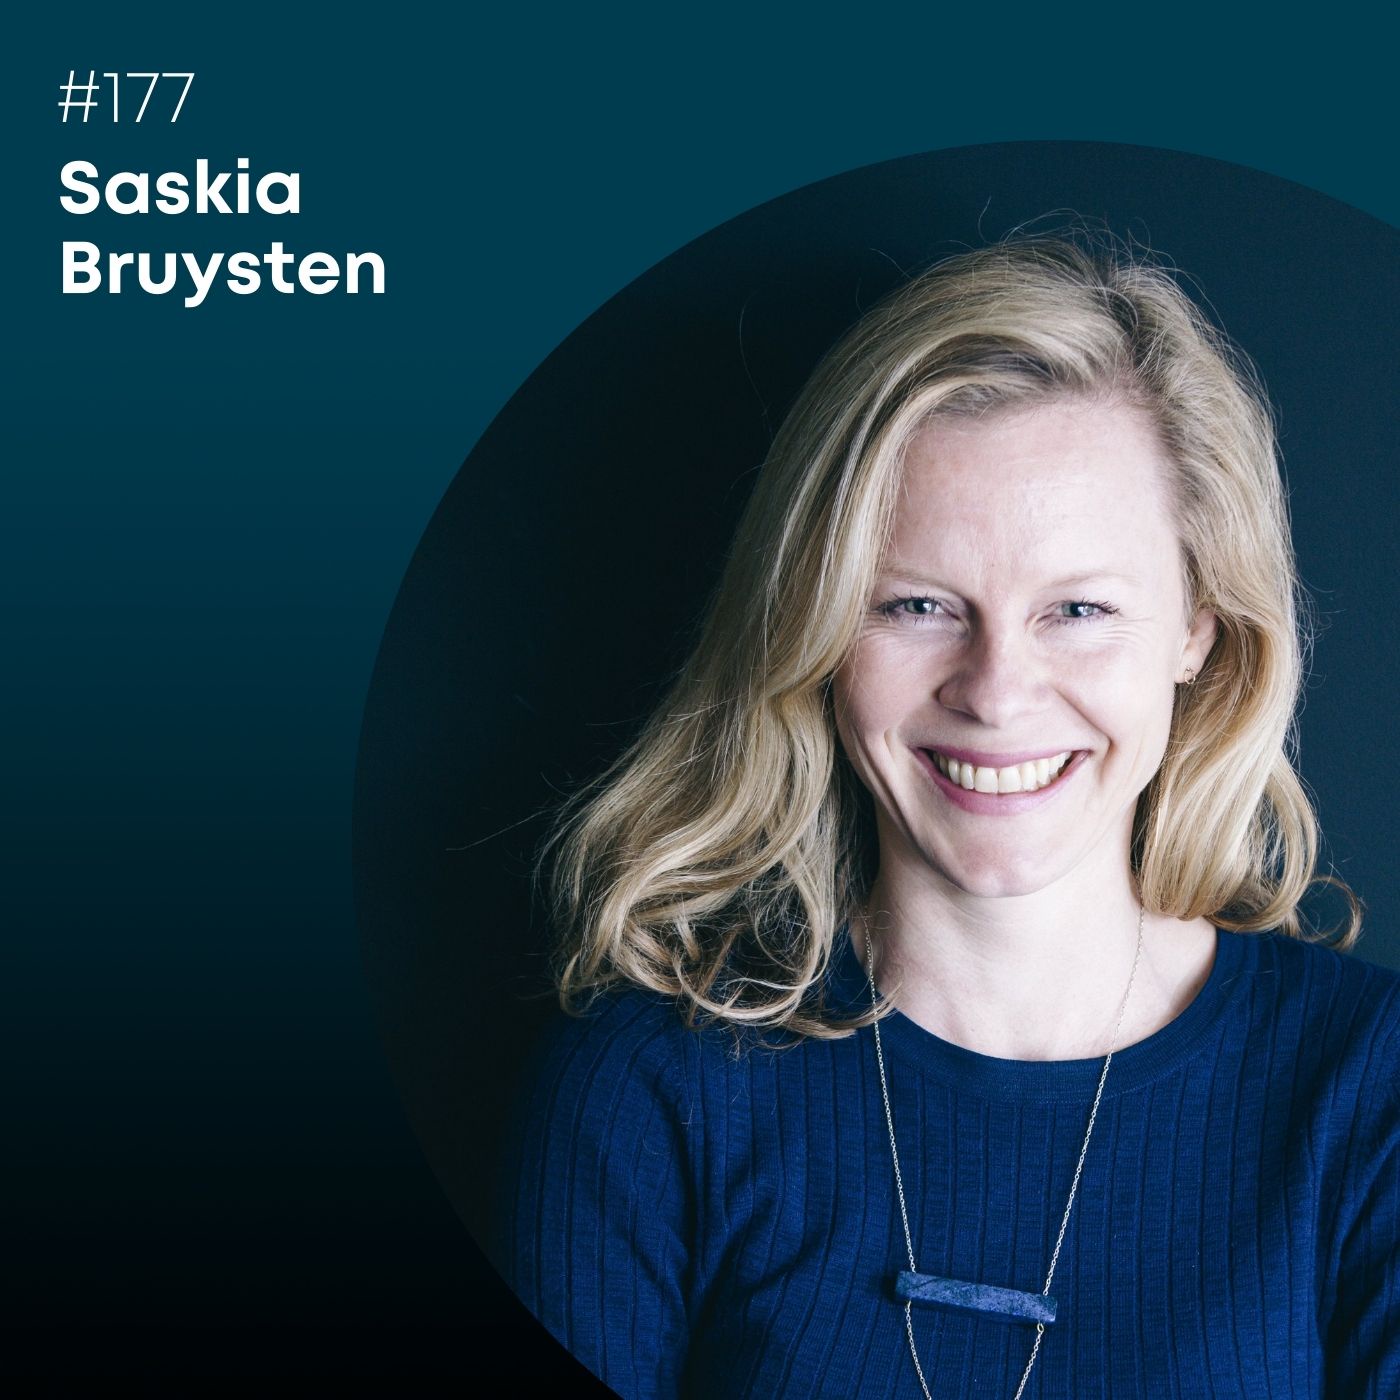 Folge 177: Saskia Bruysten, warum braucht die Welt mehr Social Business?